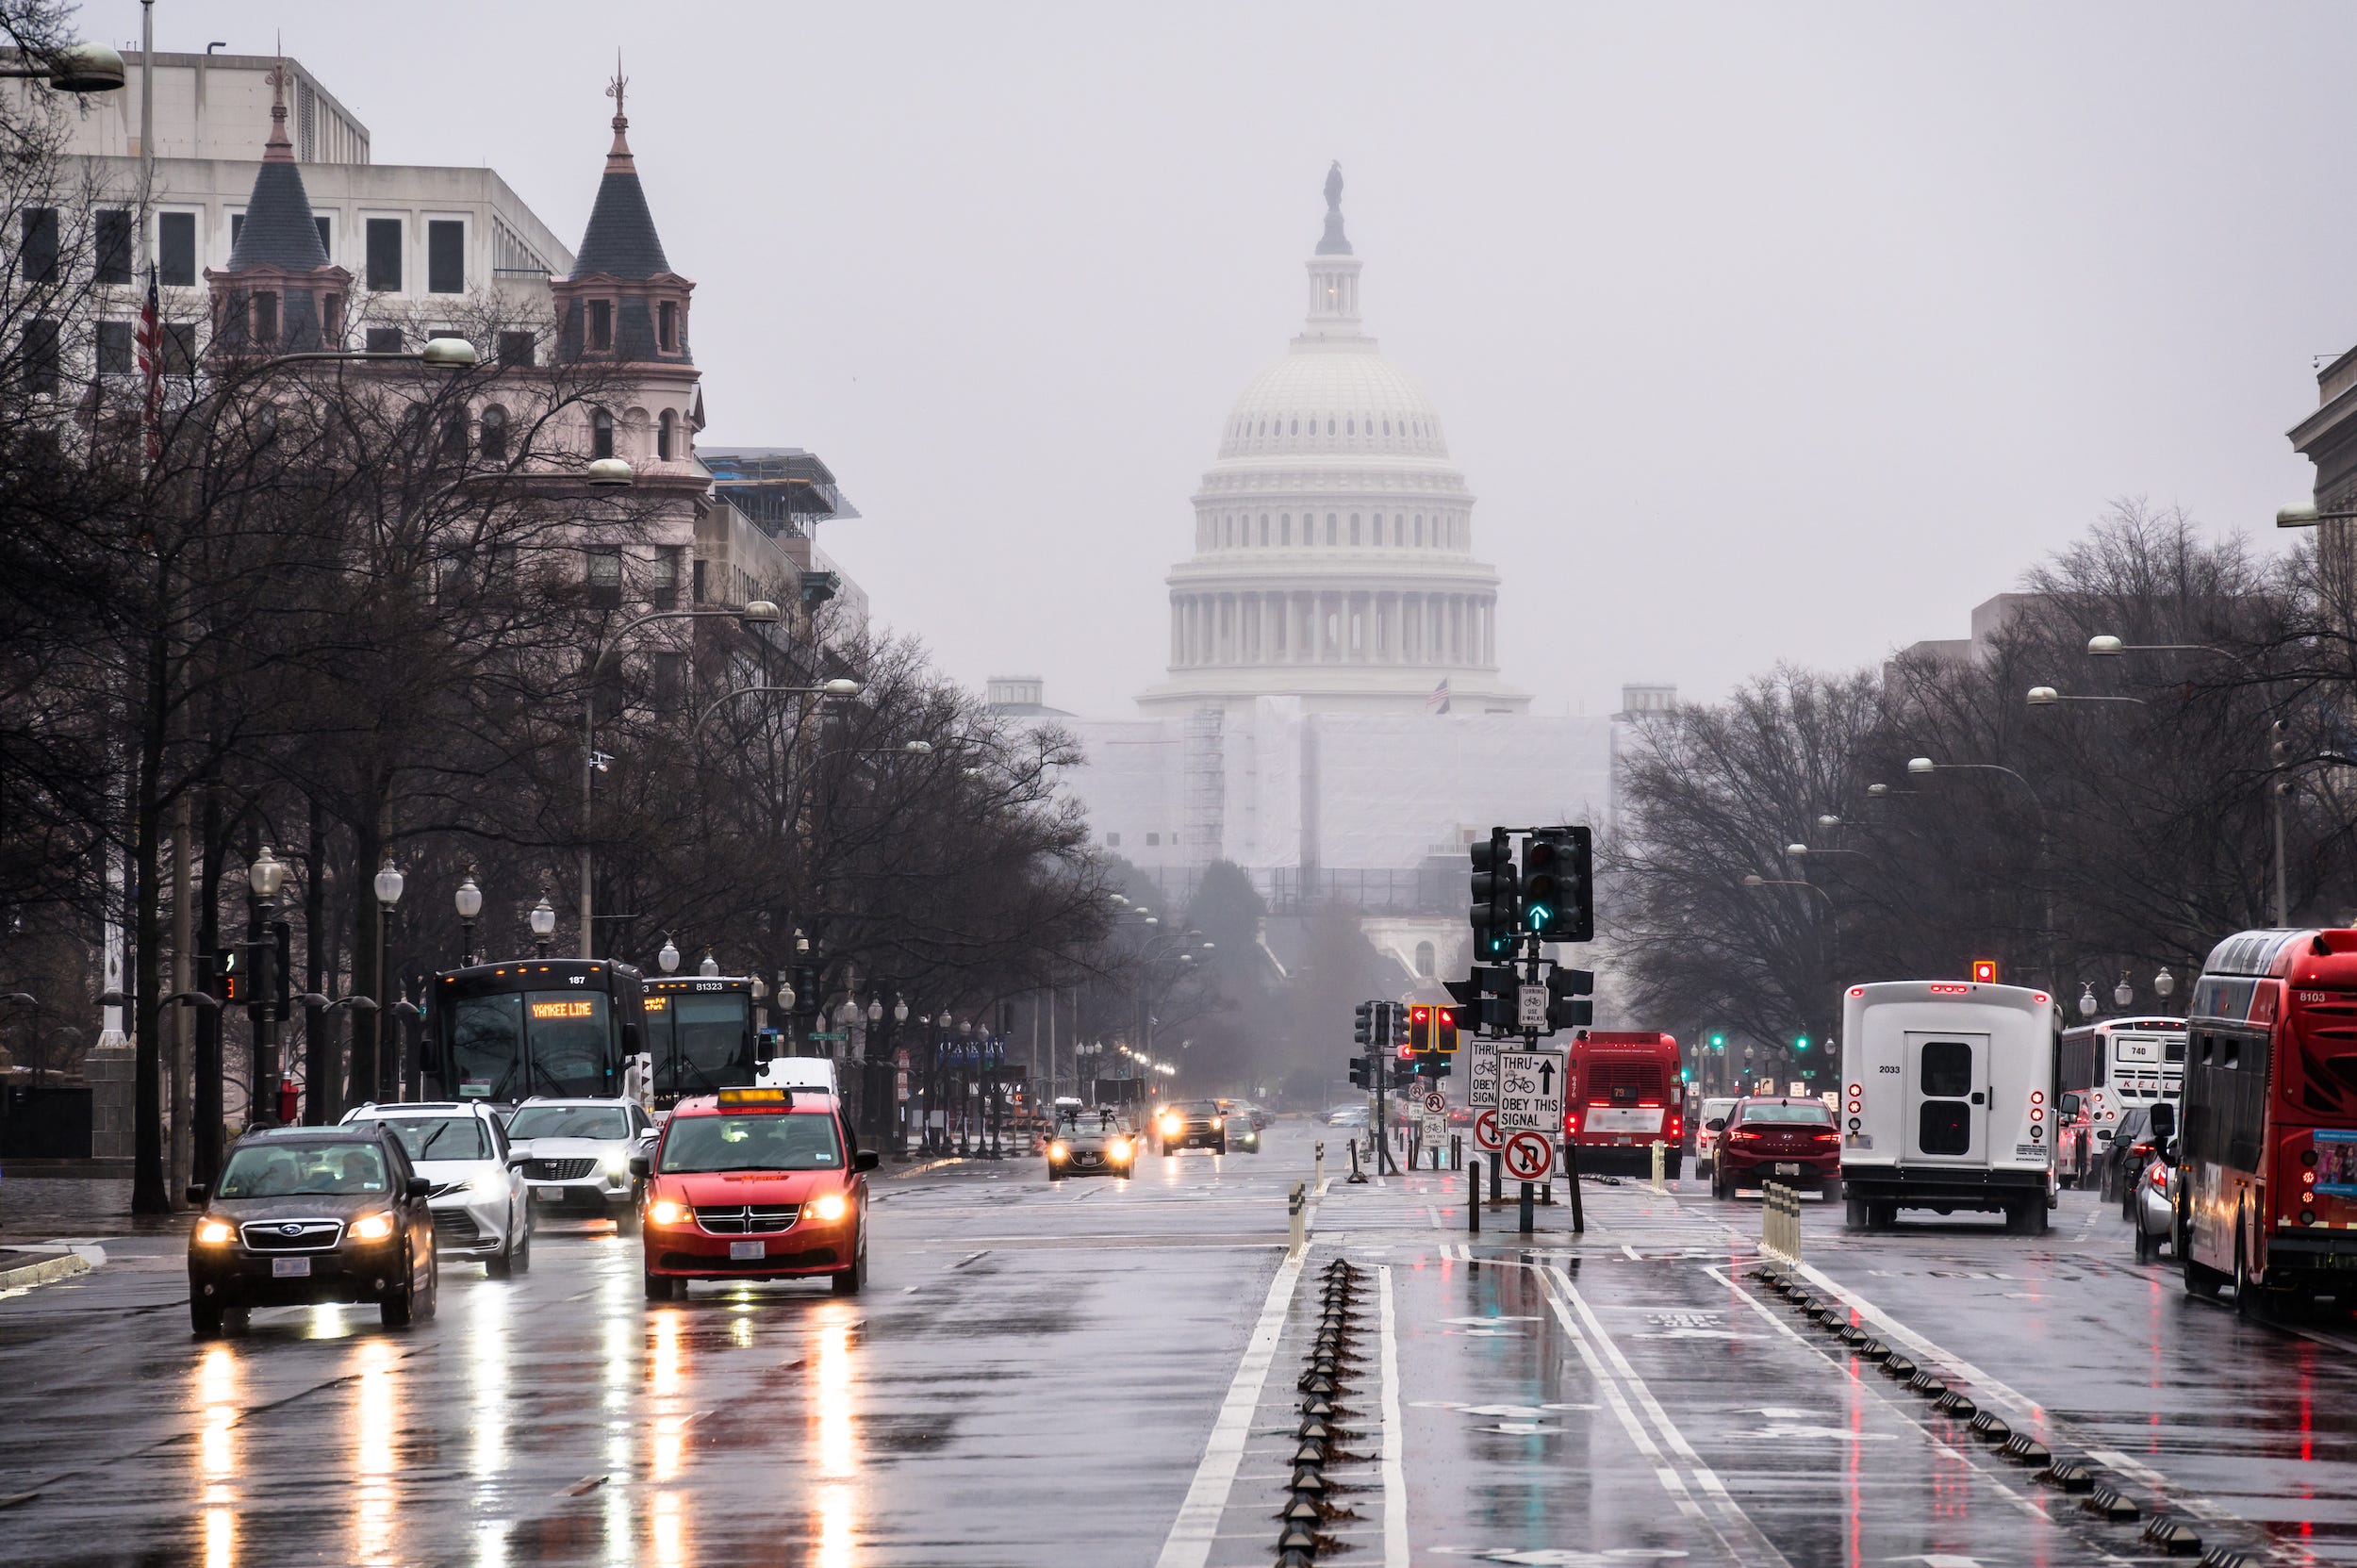 Belebte Straße an einem regnerischen Tag mit dem US-Kapitol im Hintergrund.